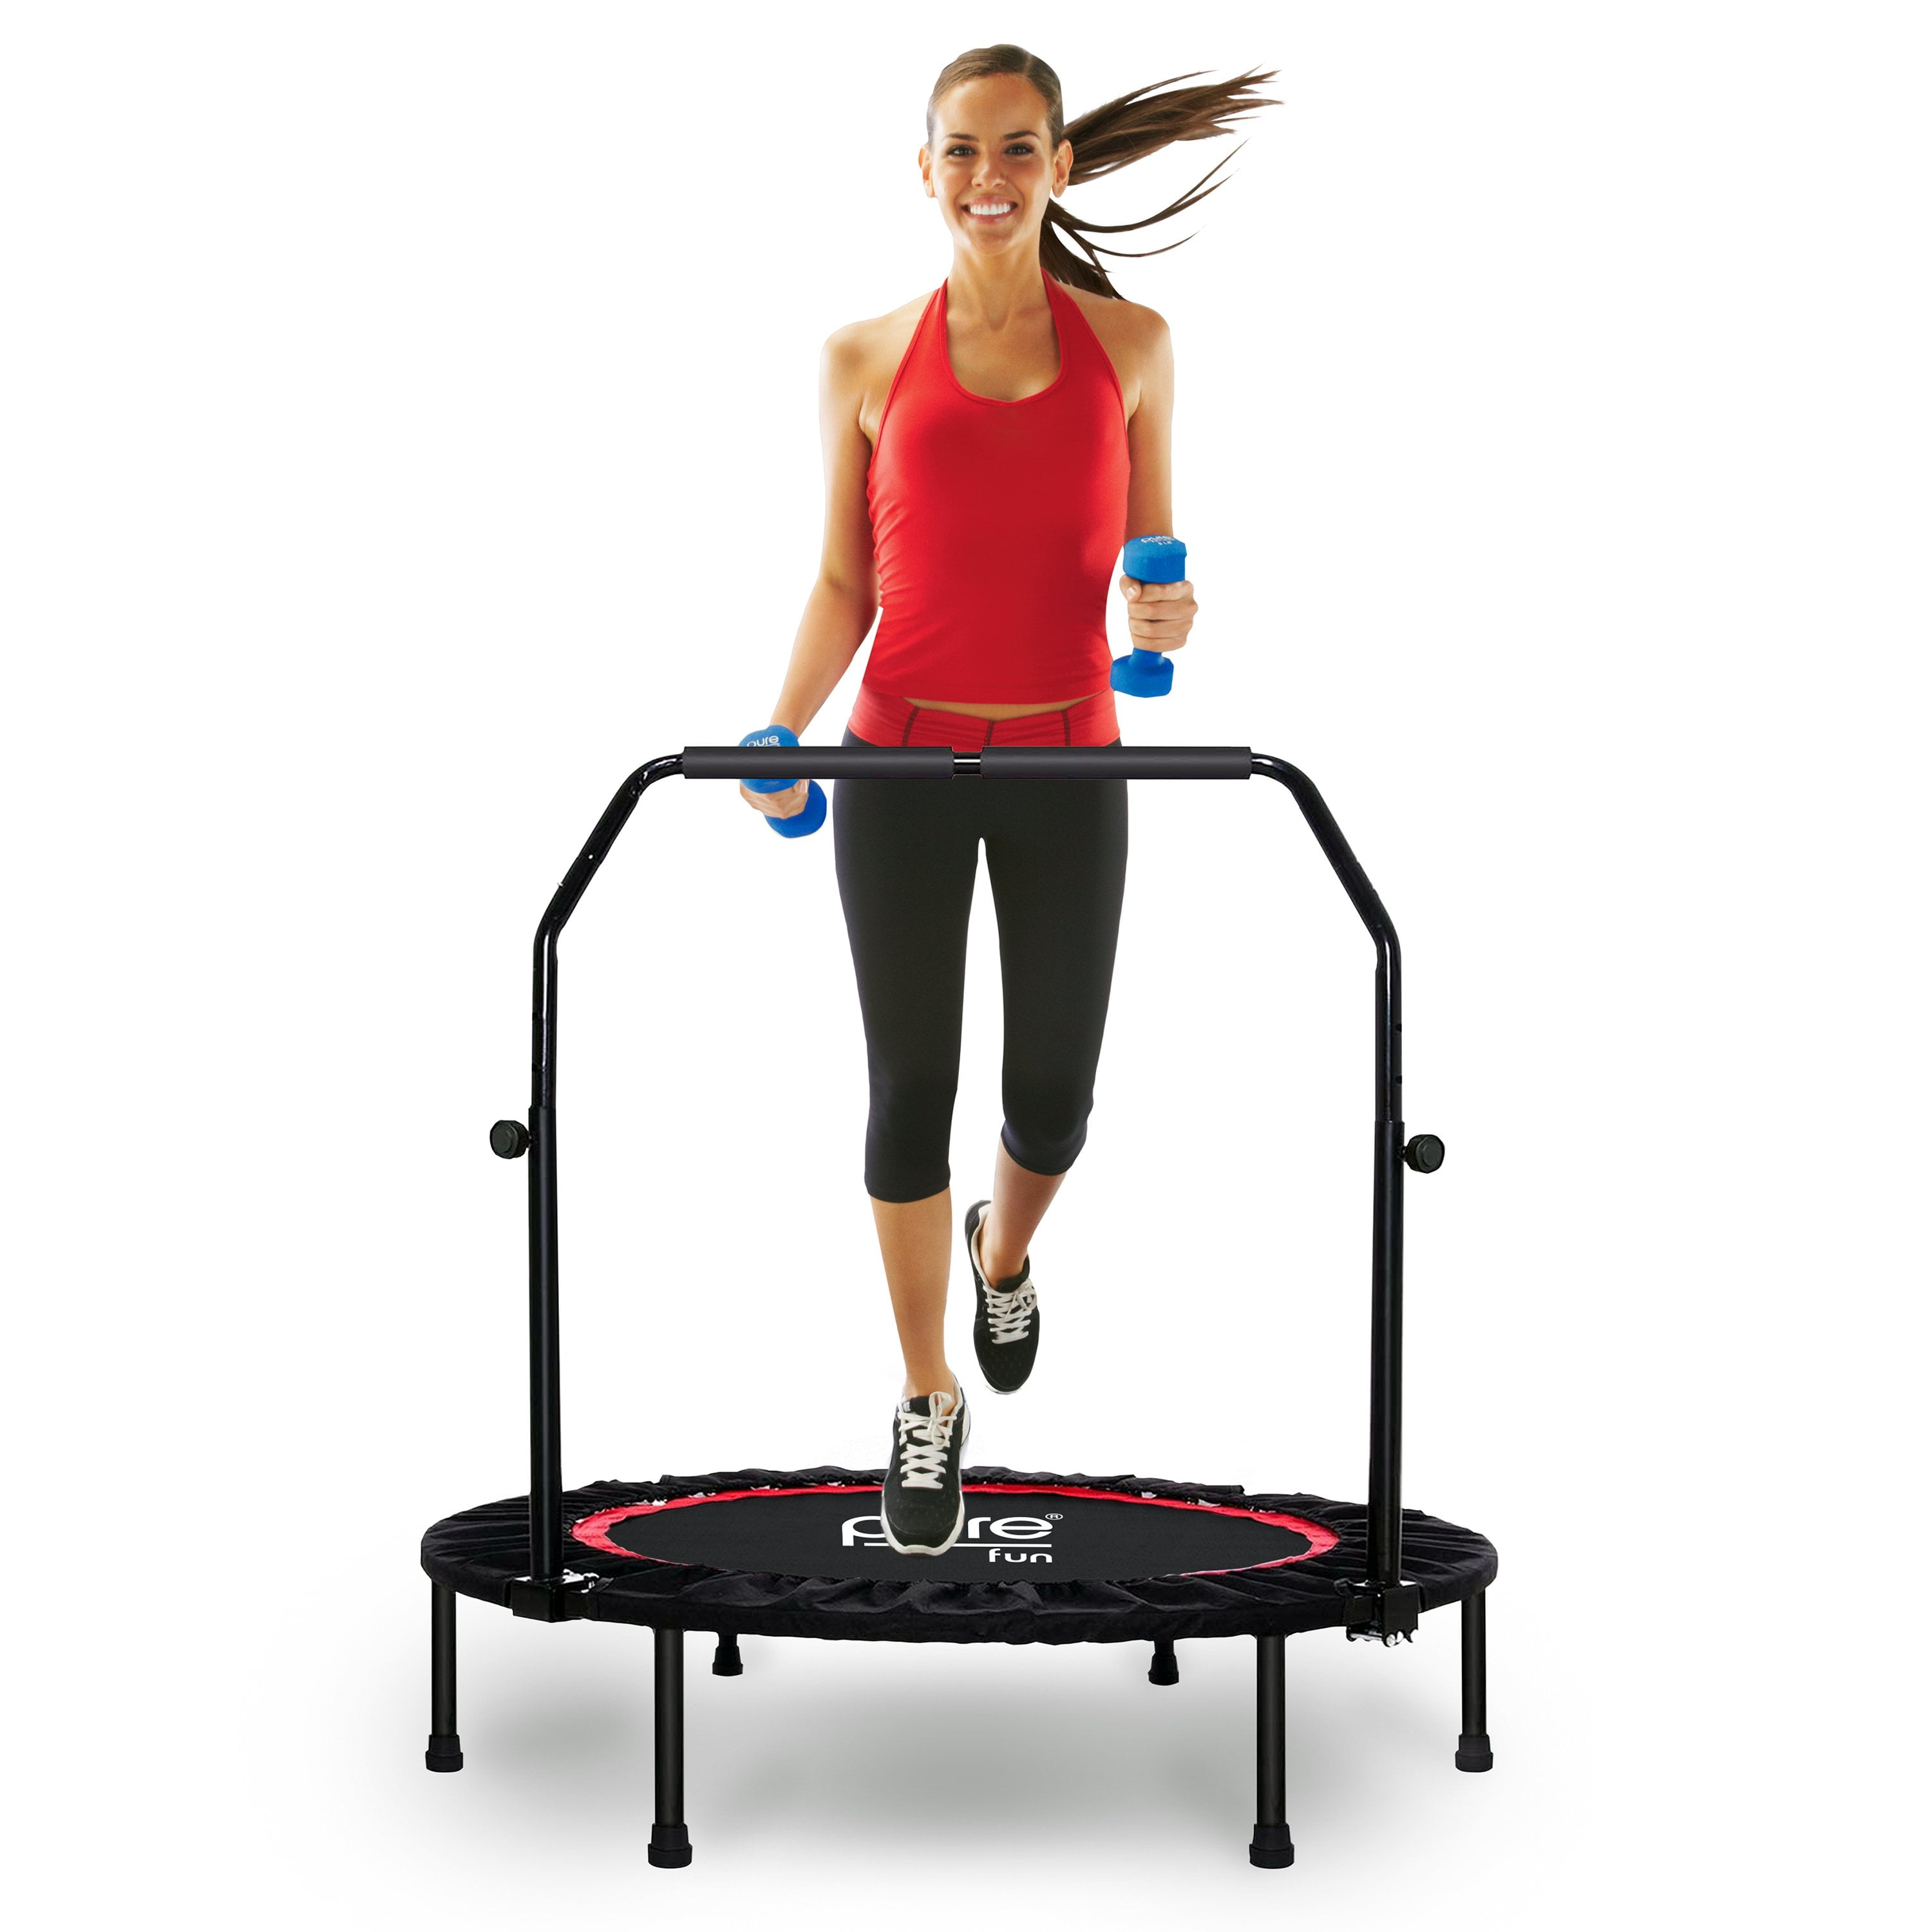 48" Adjustable Fitness Trampoline Rebounder Workout Exercise W/resistance Bands